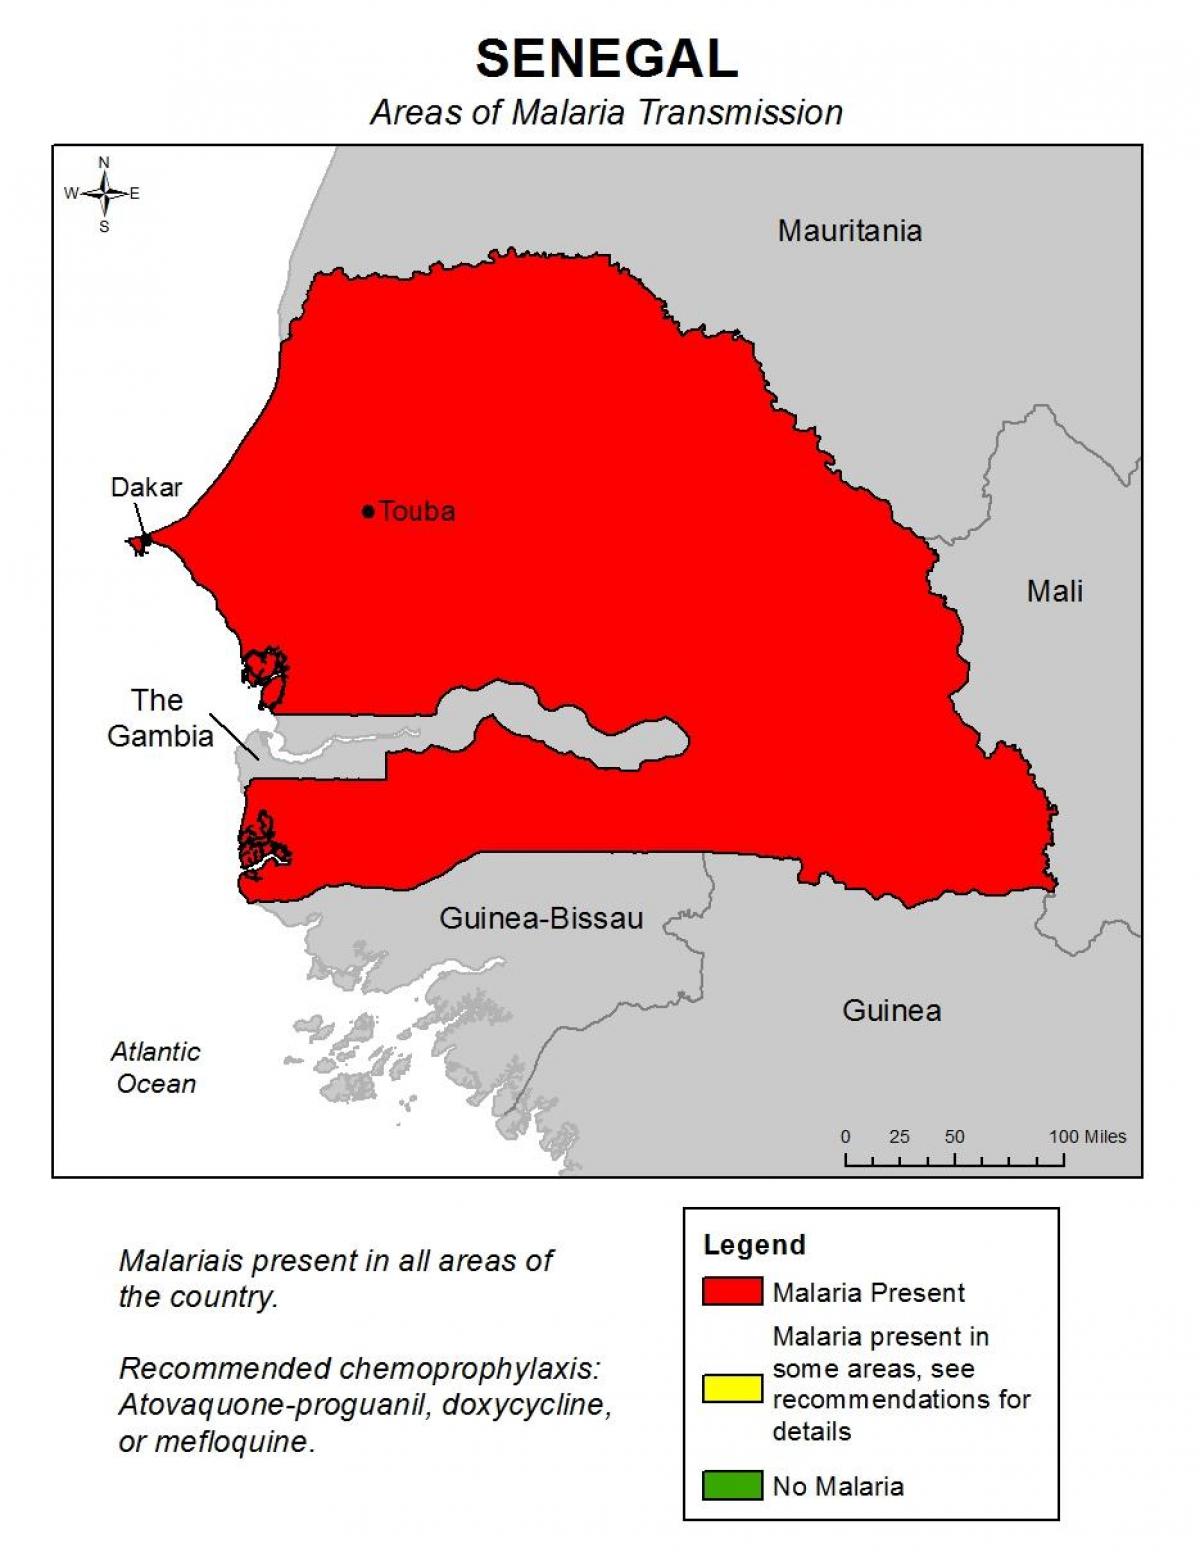 नक्शा सेनेगल के मलेरिया